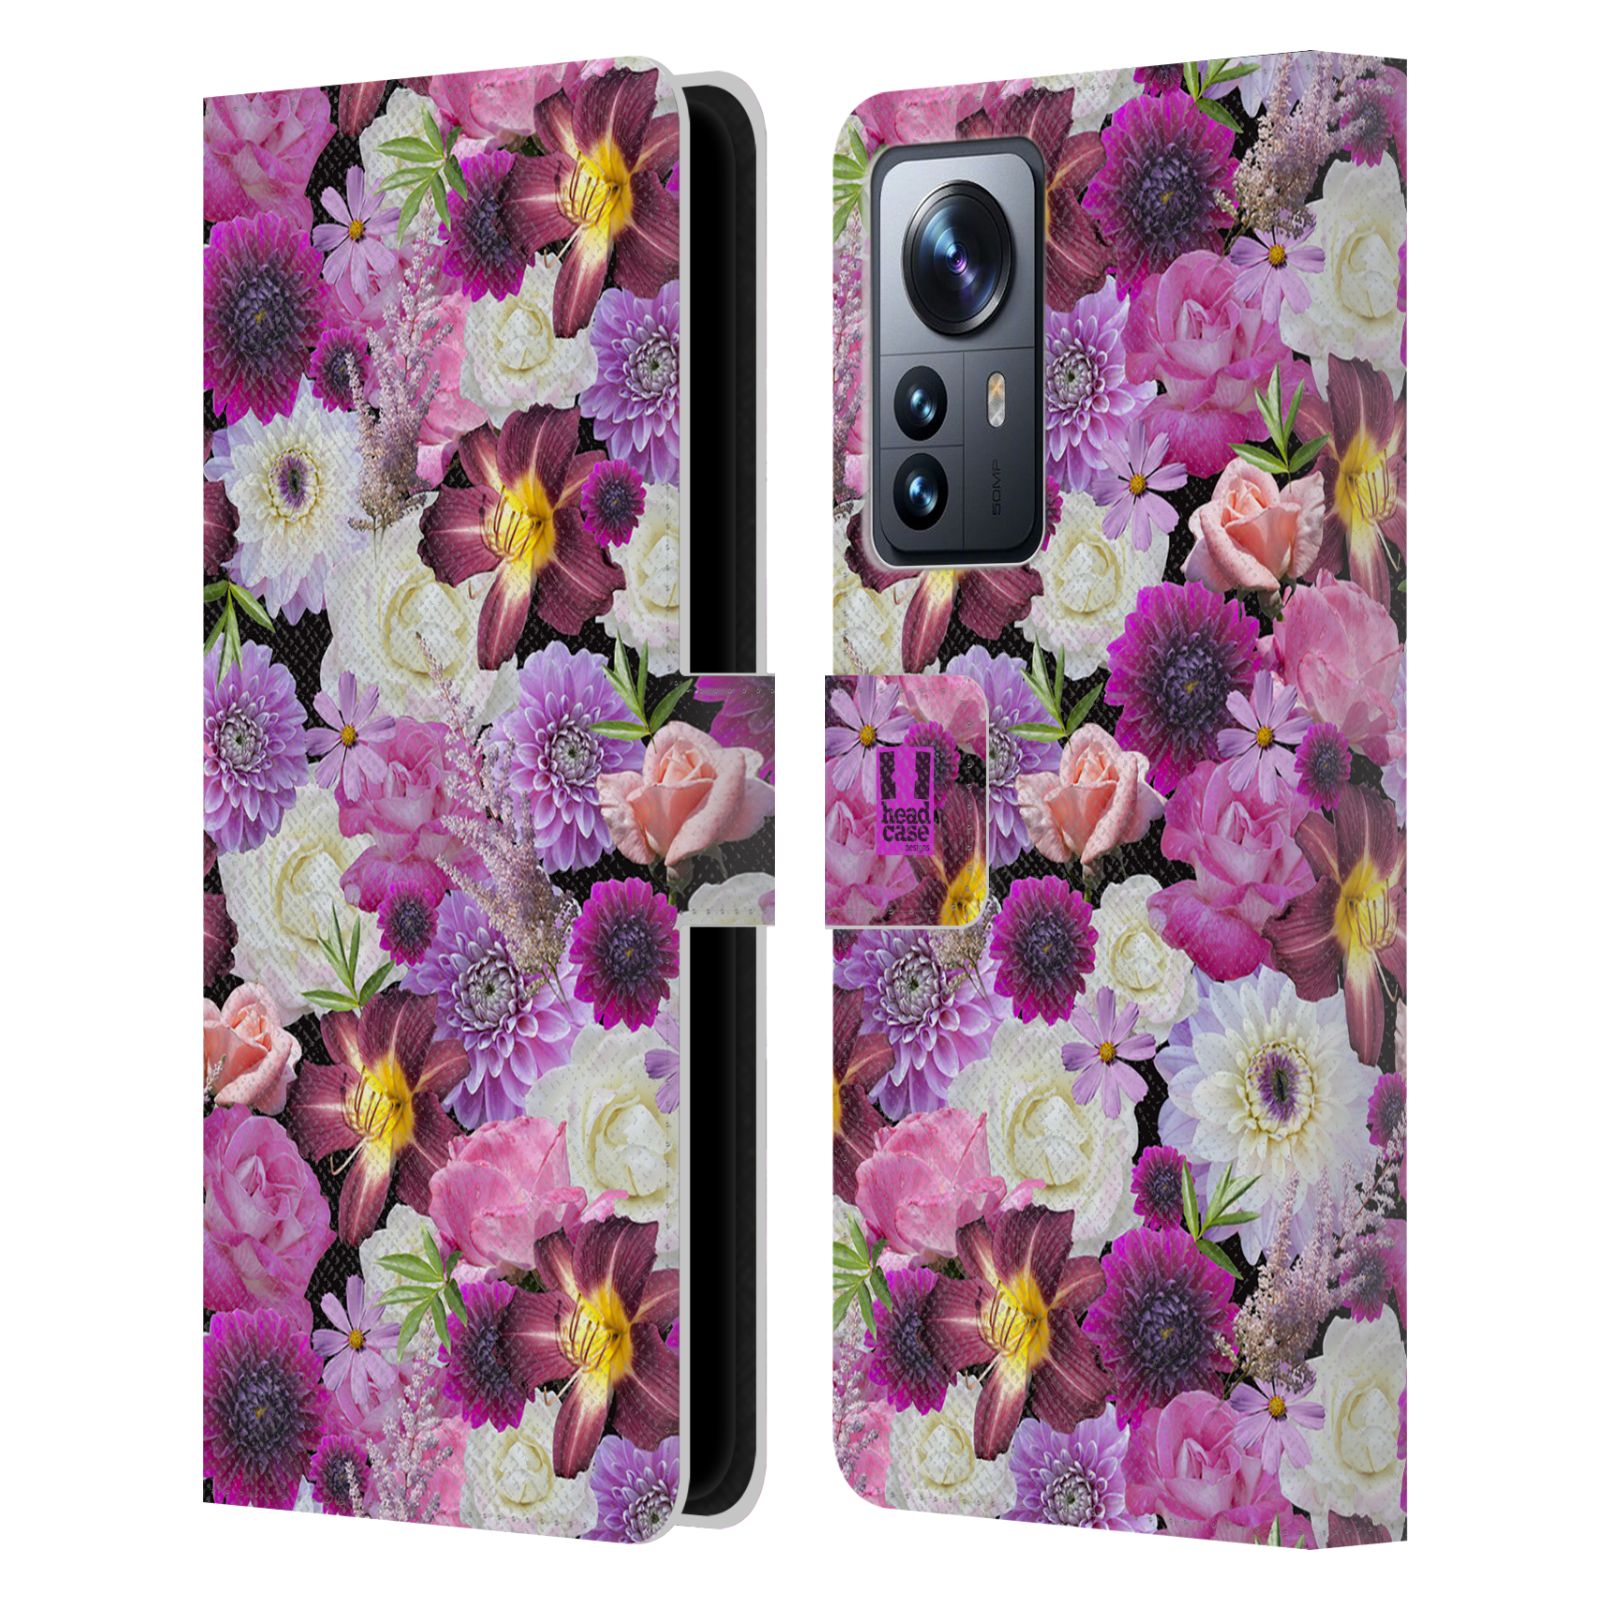 Pouzdro HEAD CASE na mobil Xiaomi 12 PRO květy foto fialová a bílá